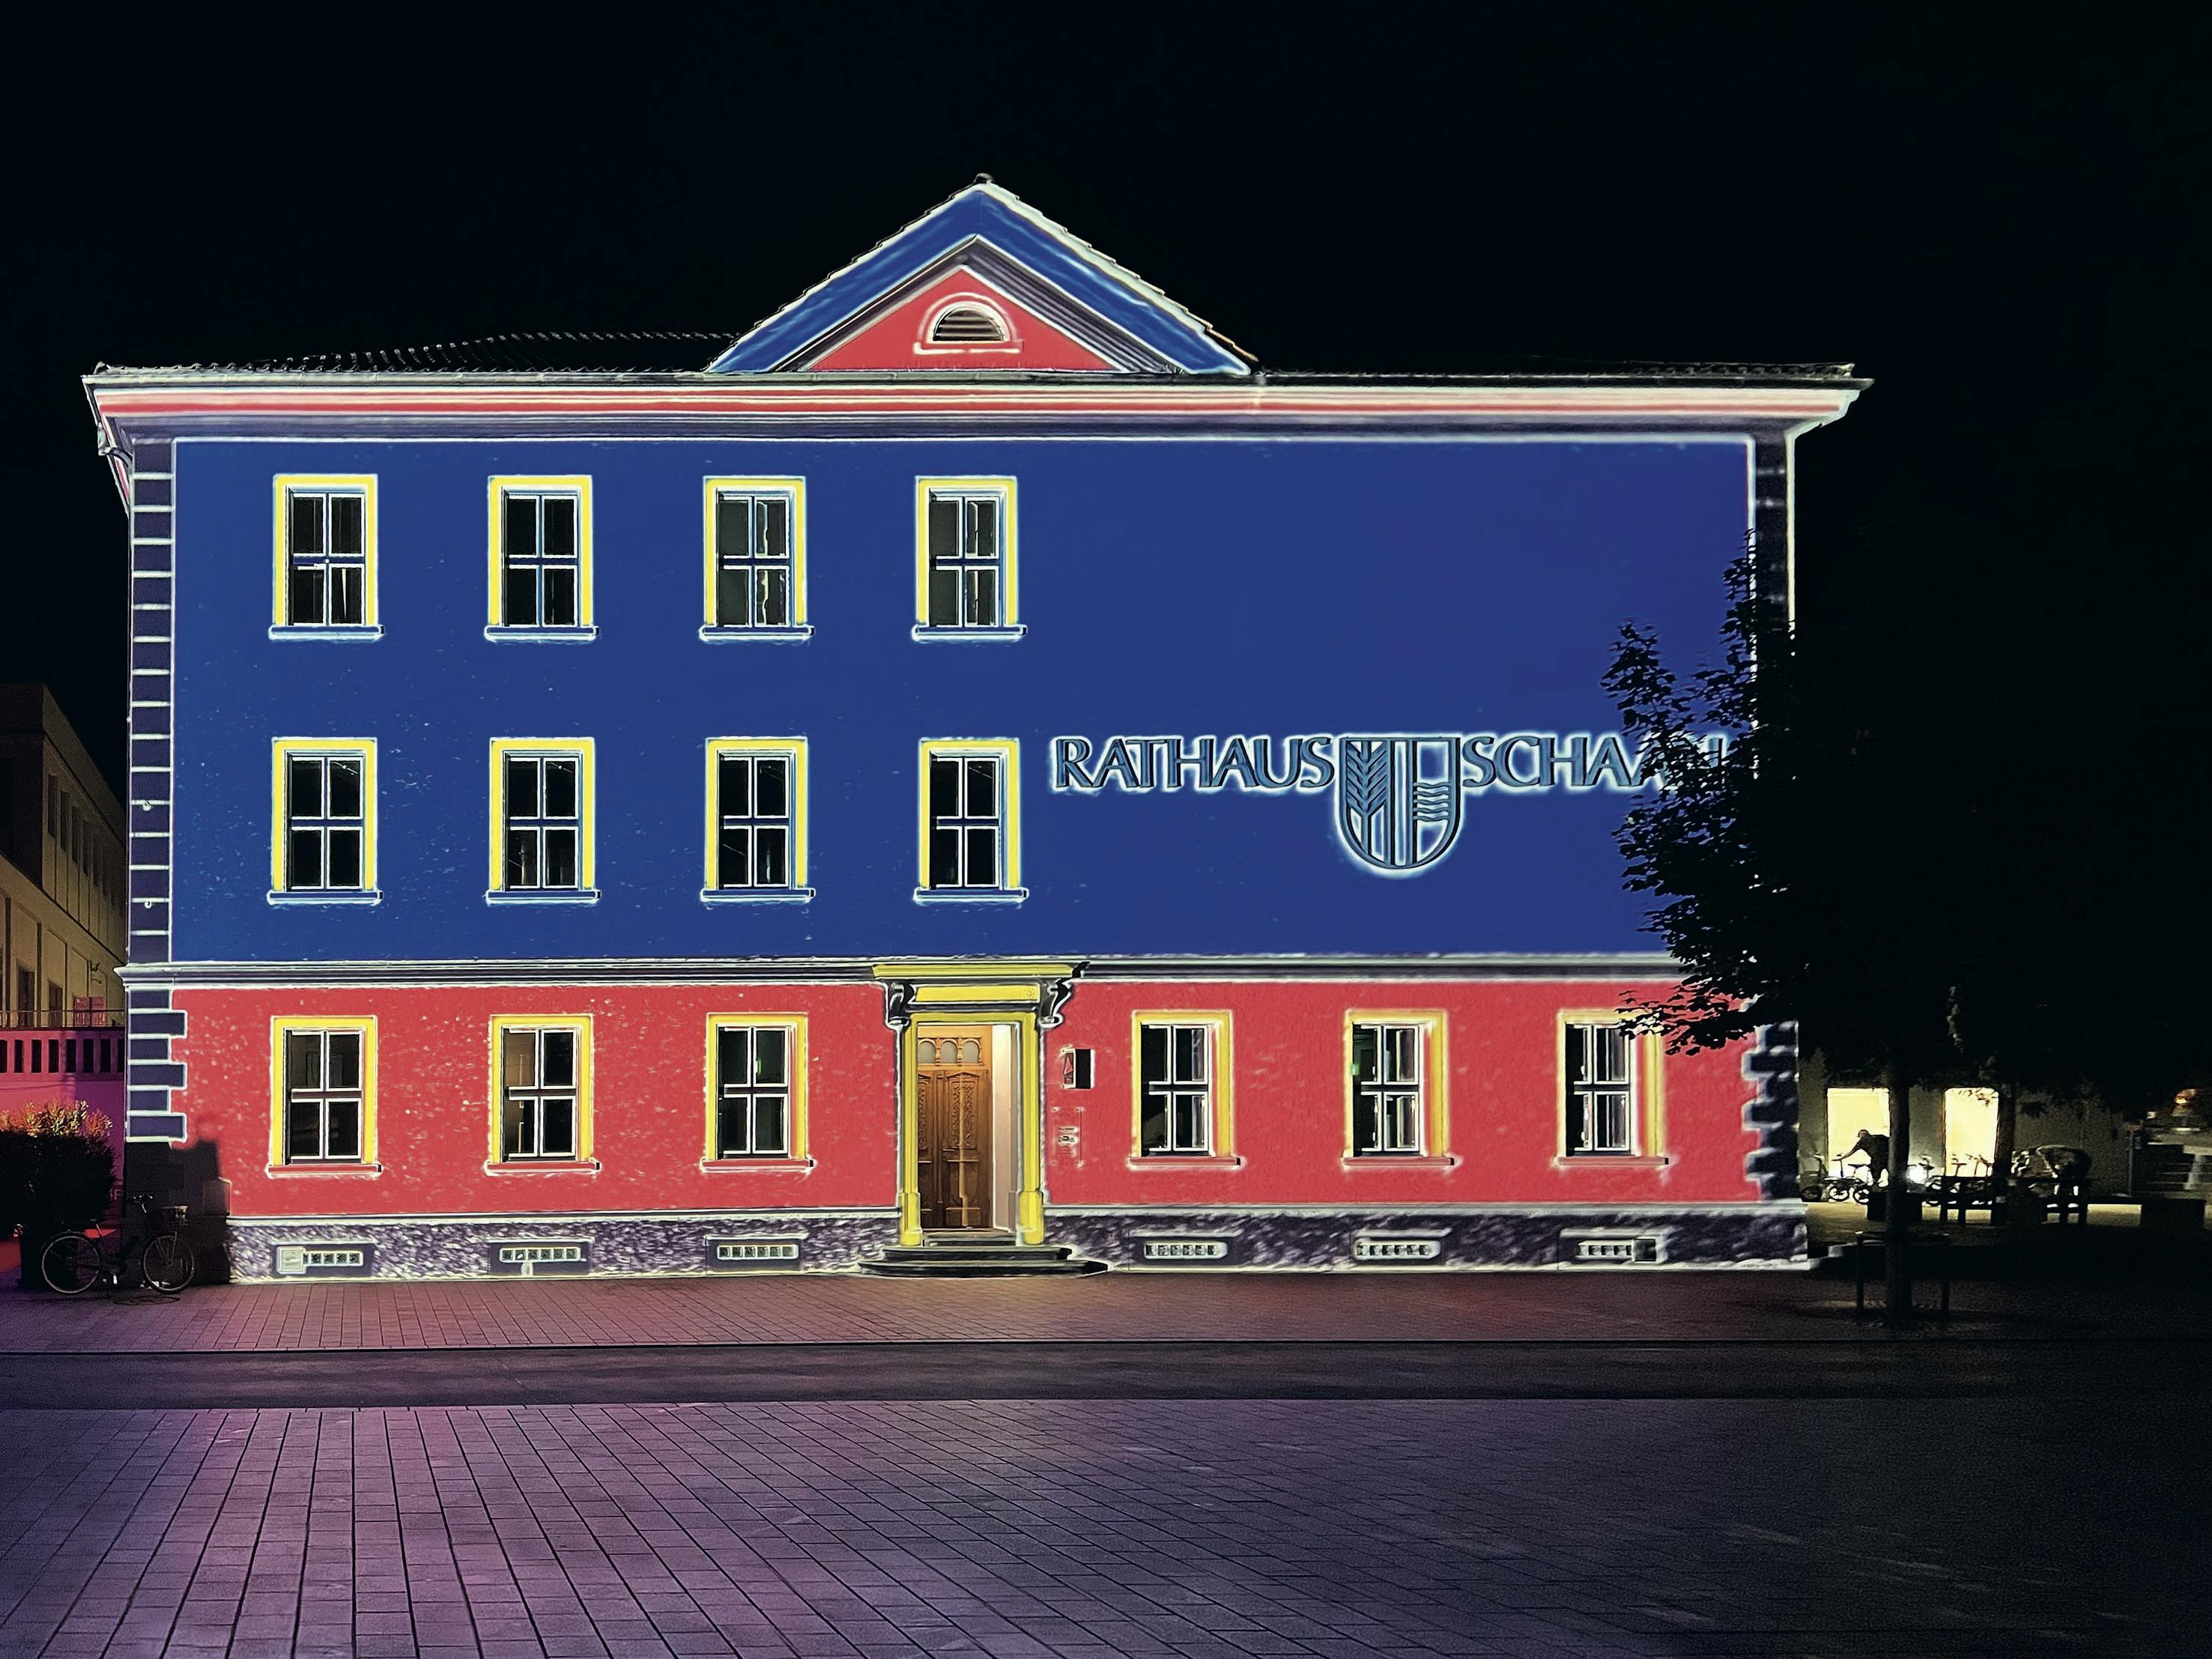 Schaan – Rathaus